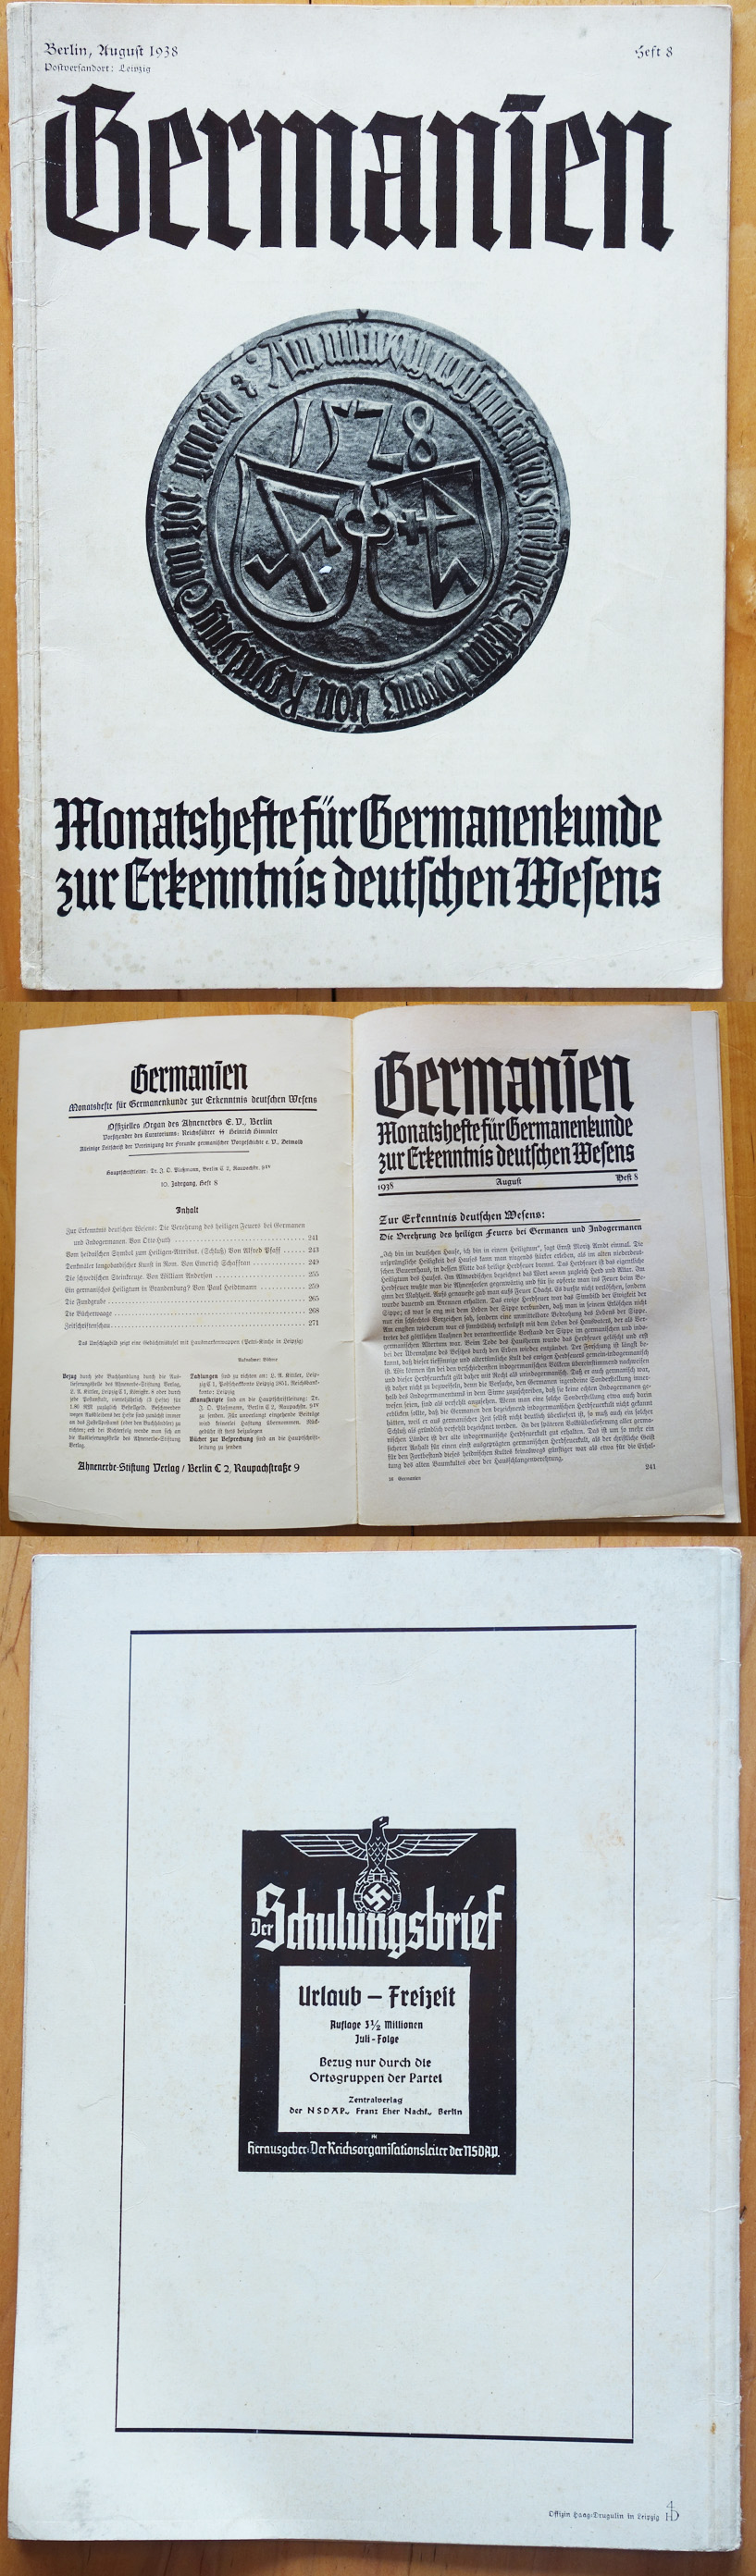 Germanien, August 1938, Issue 8